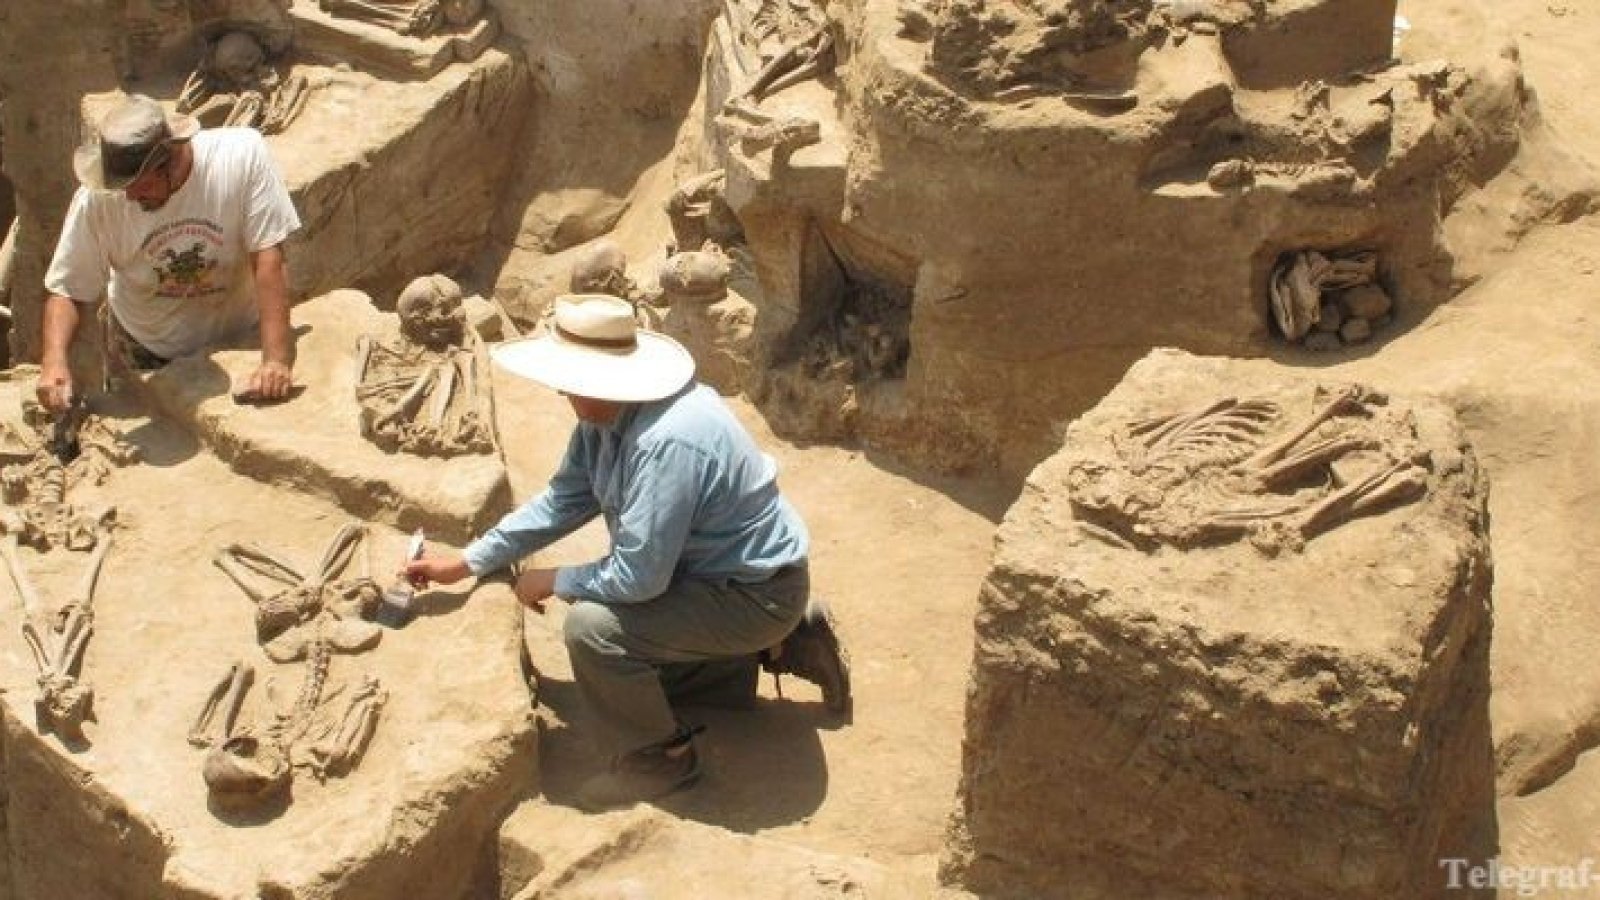 Археолог какую работу выполняют люди этой профессии